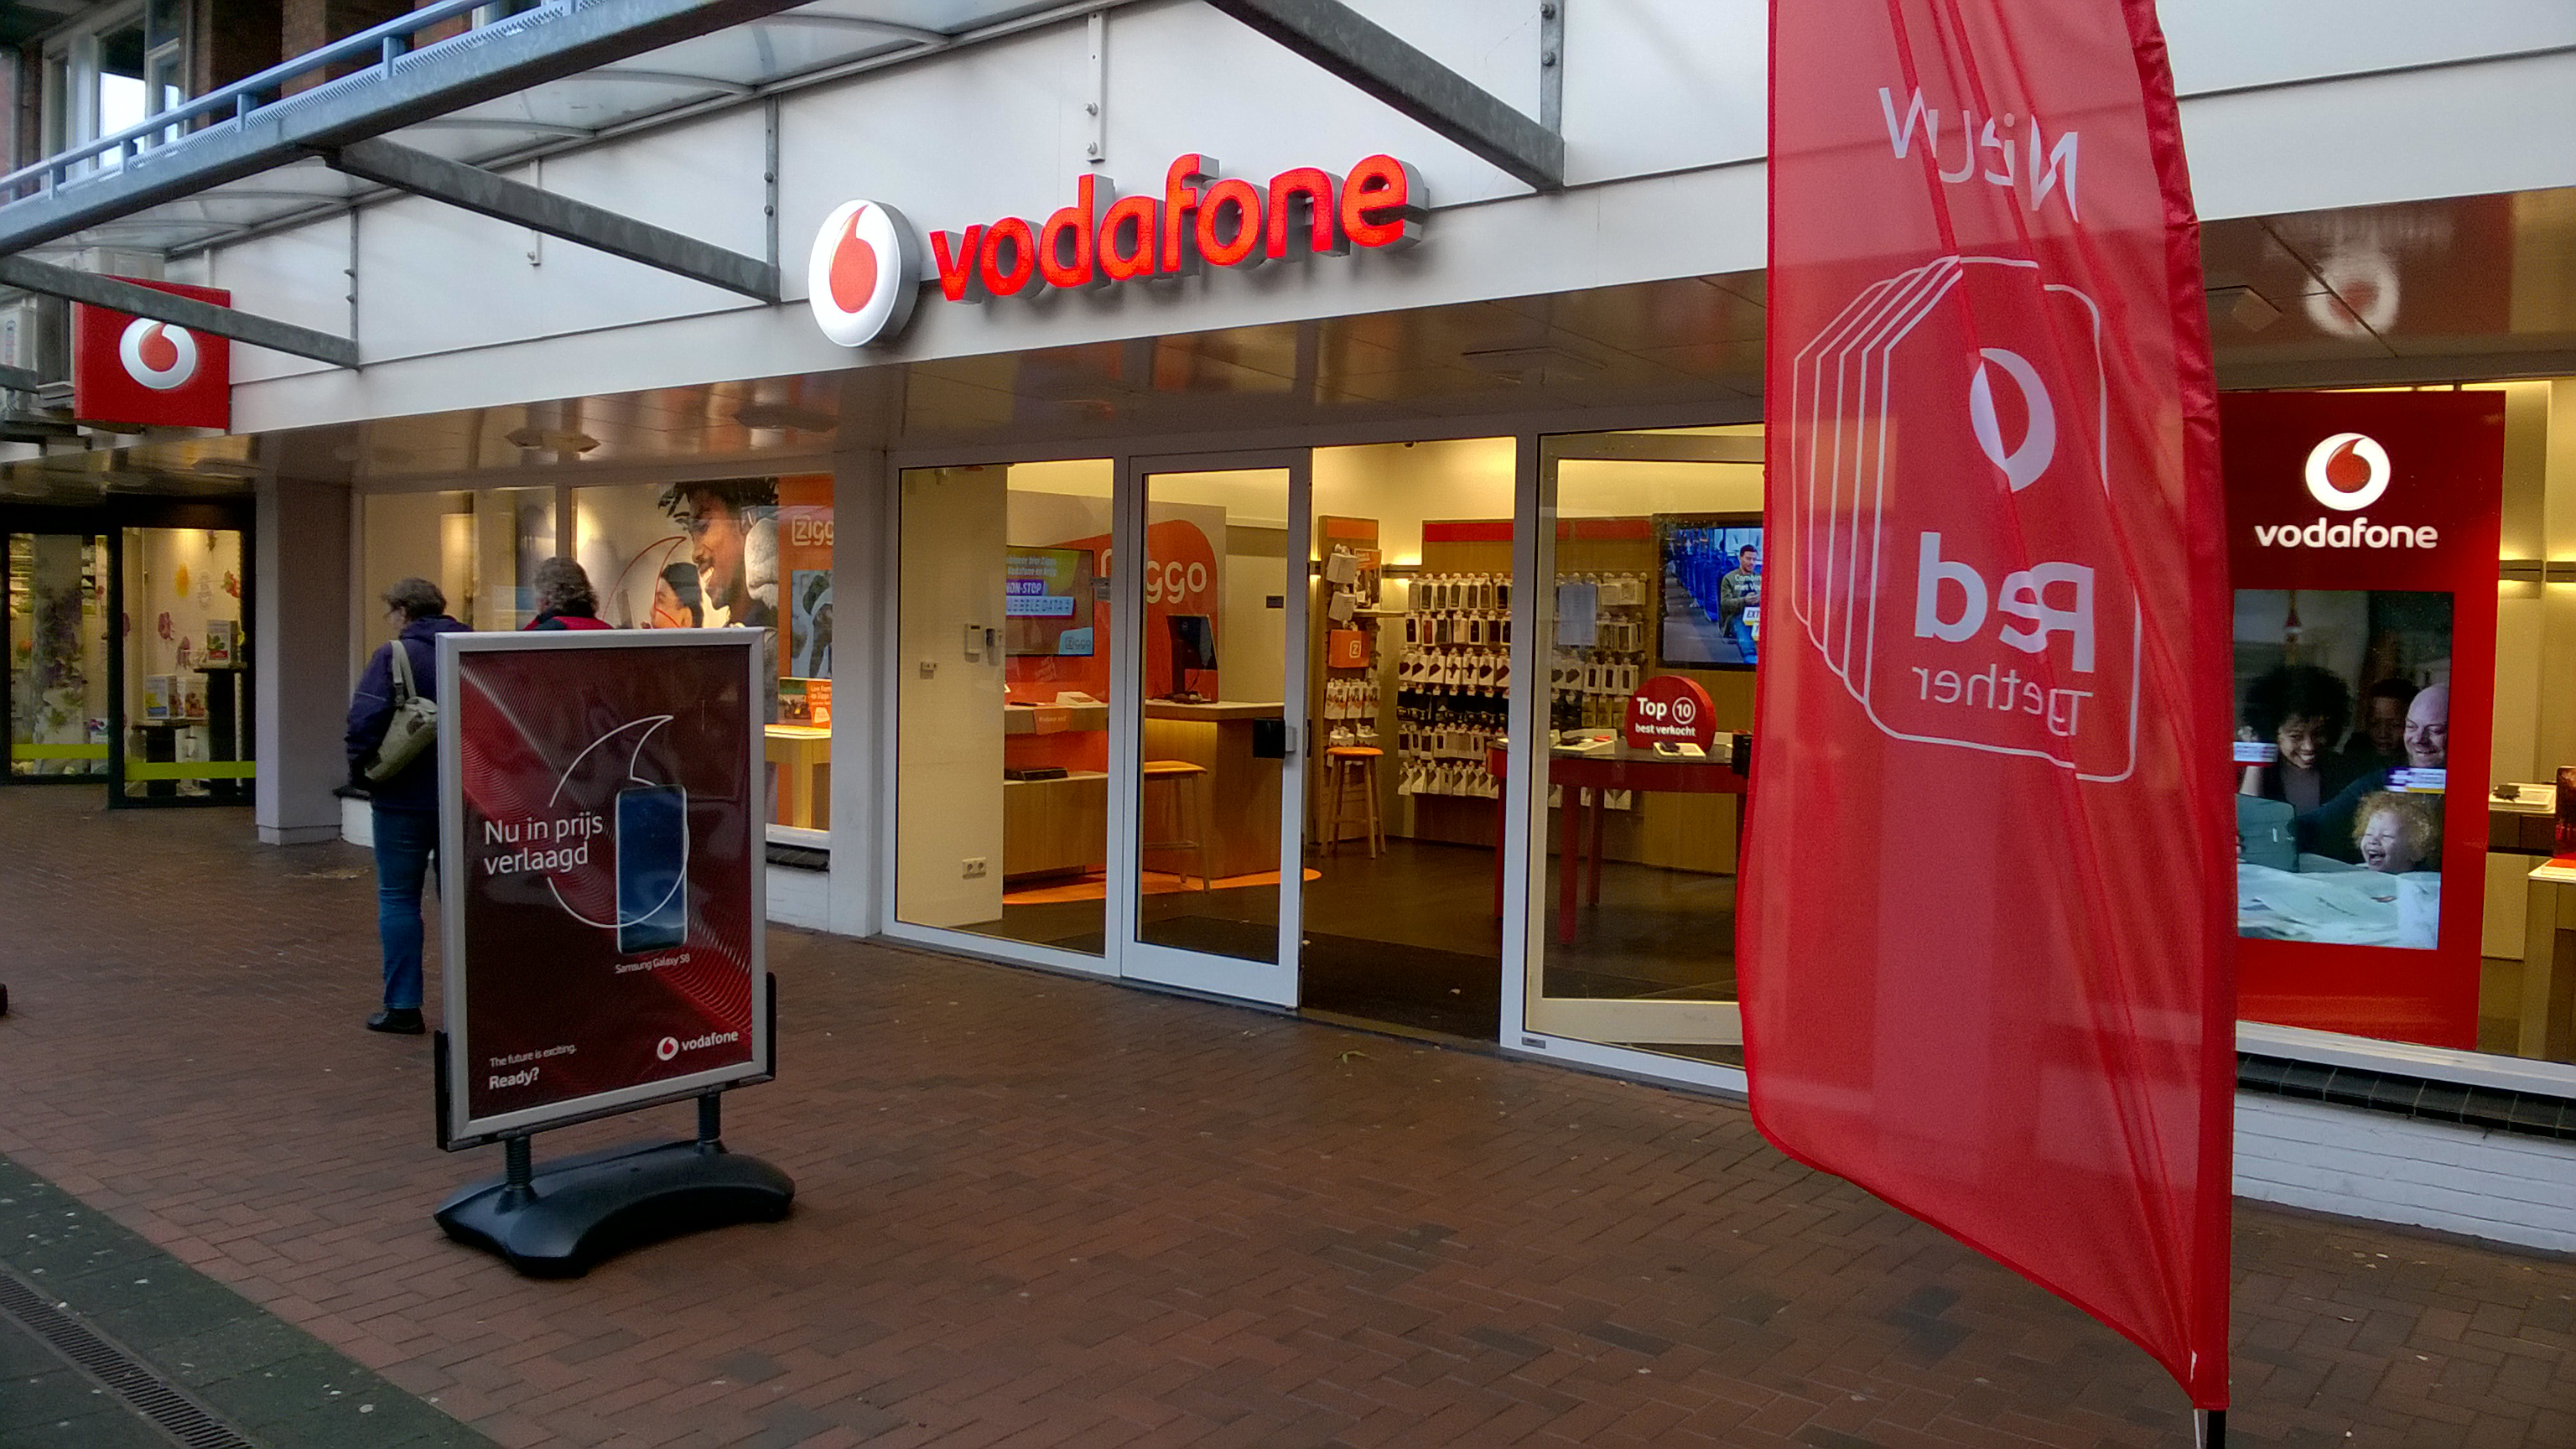 VOIPZeker - Vodafone stopt met 3g netwerk - VOIPZeker simkaart goed alternatief voor bedrijven.jpg